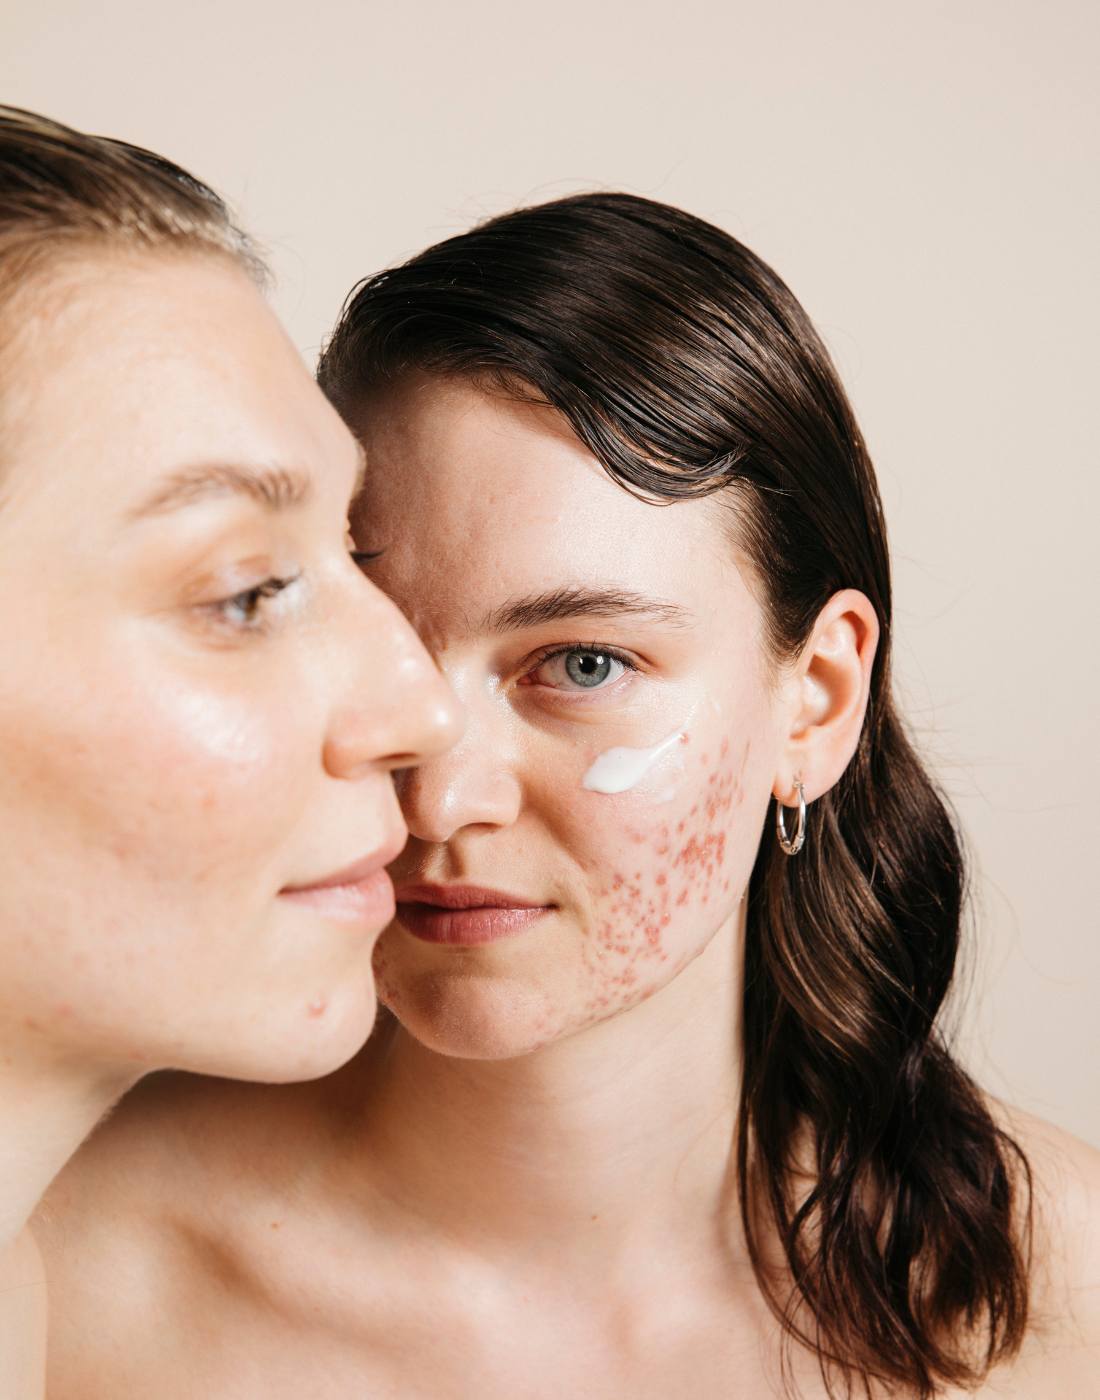 porträt zweier weiblich gelesener modells mit akne, ein Gesicht seitlich angeschnitten, das andere modell schaut in die kamera. Auf der Wange ist creme aufgetragen.